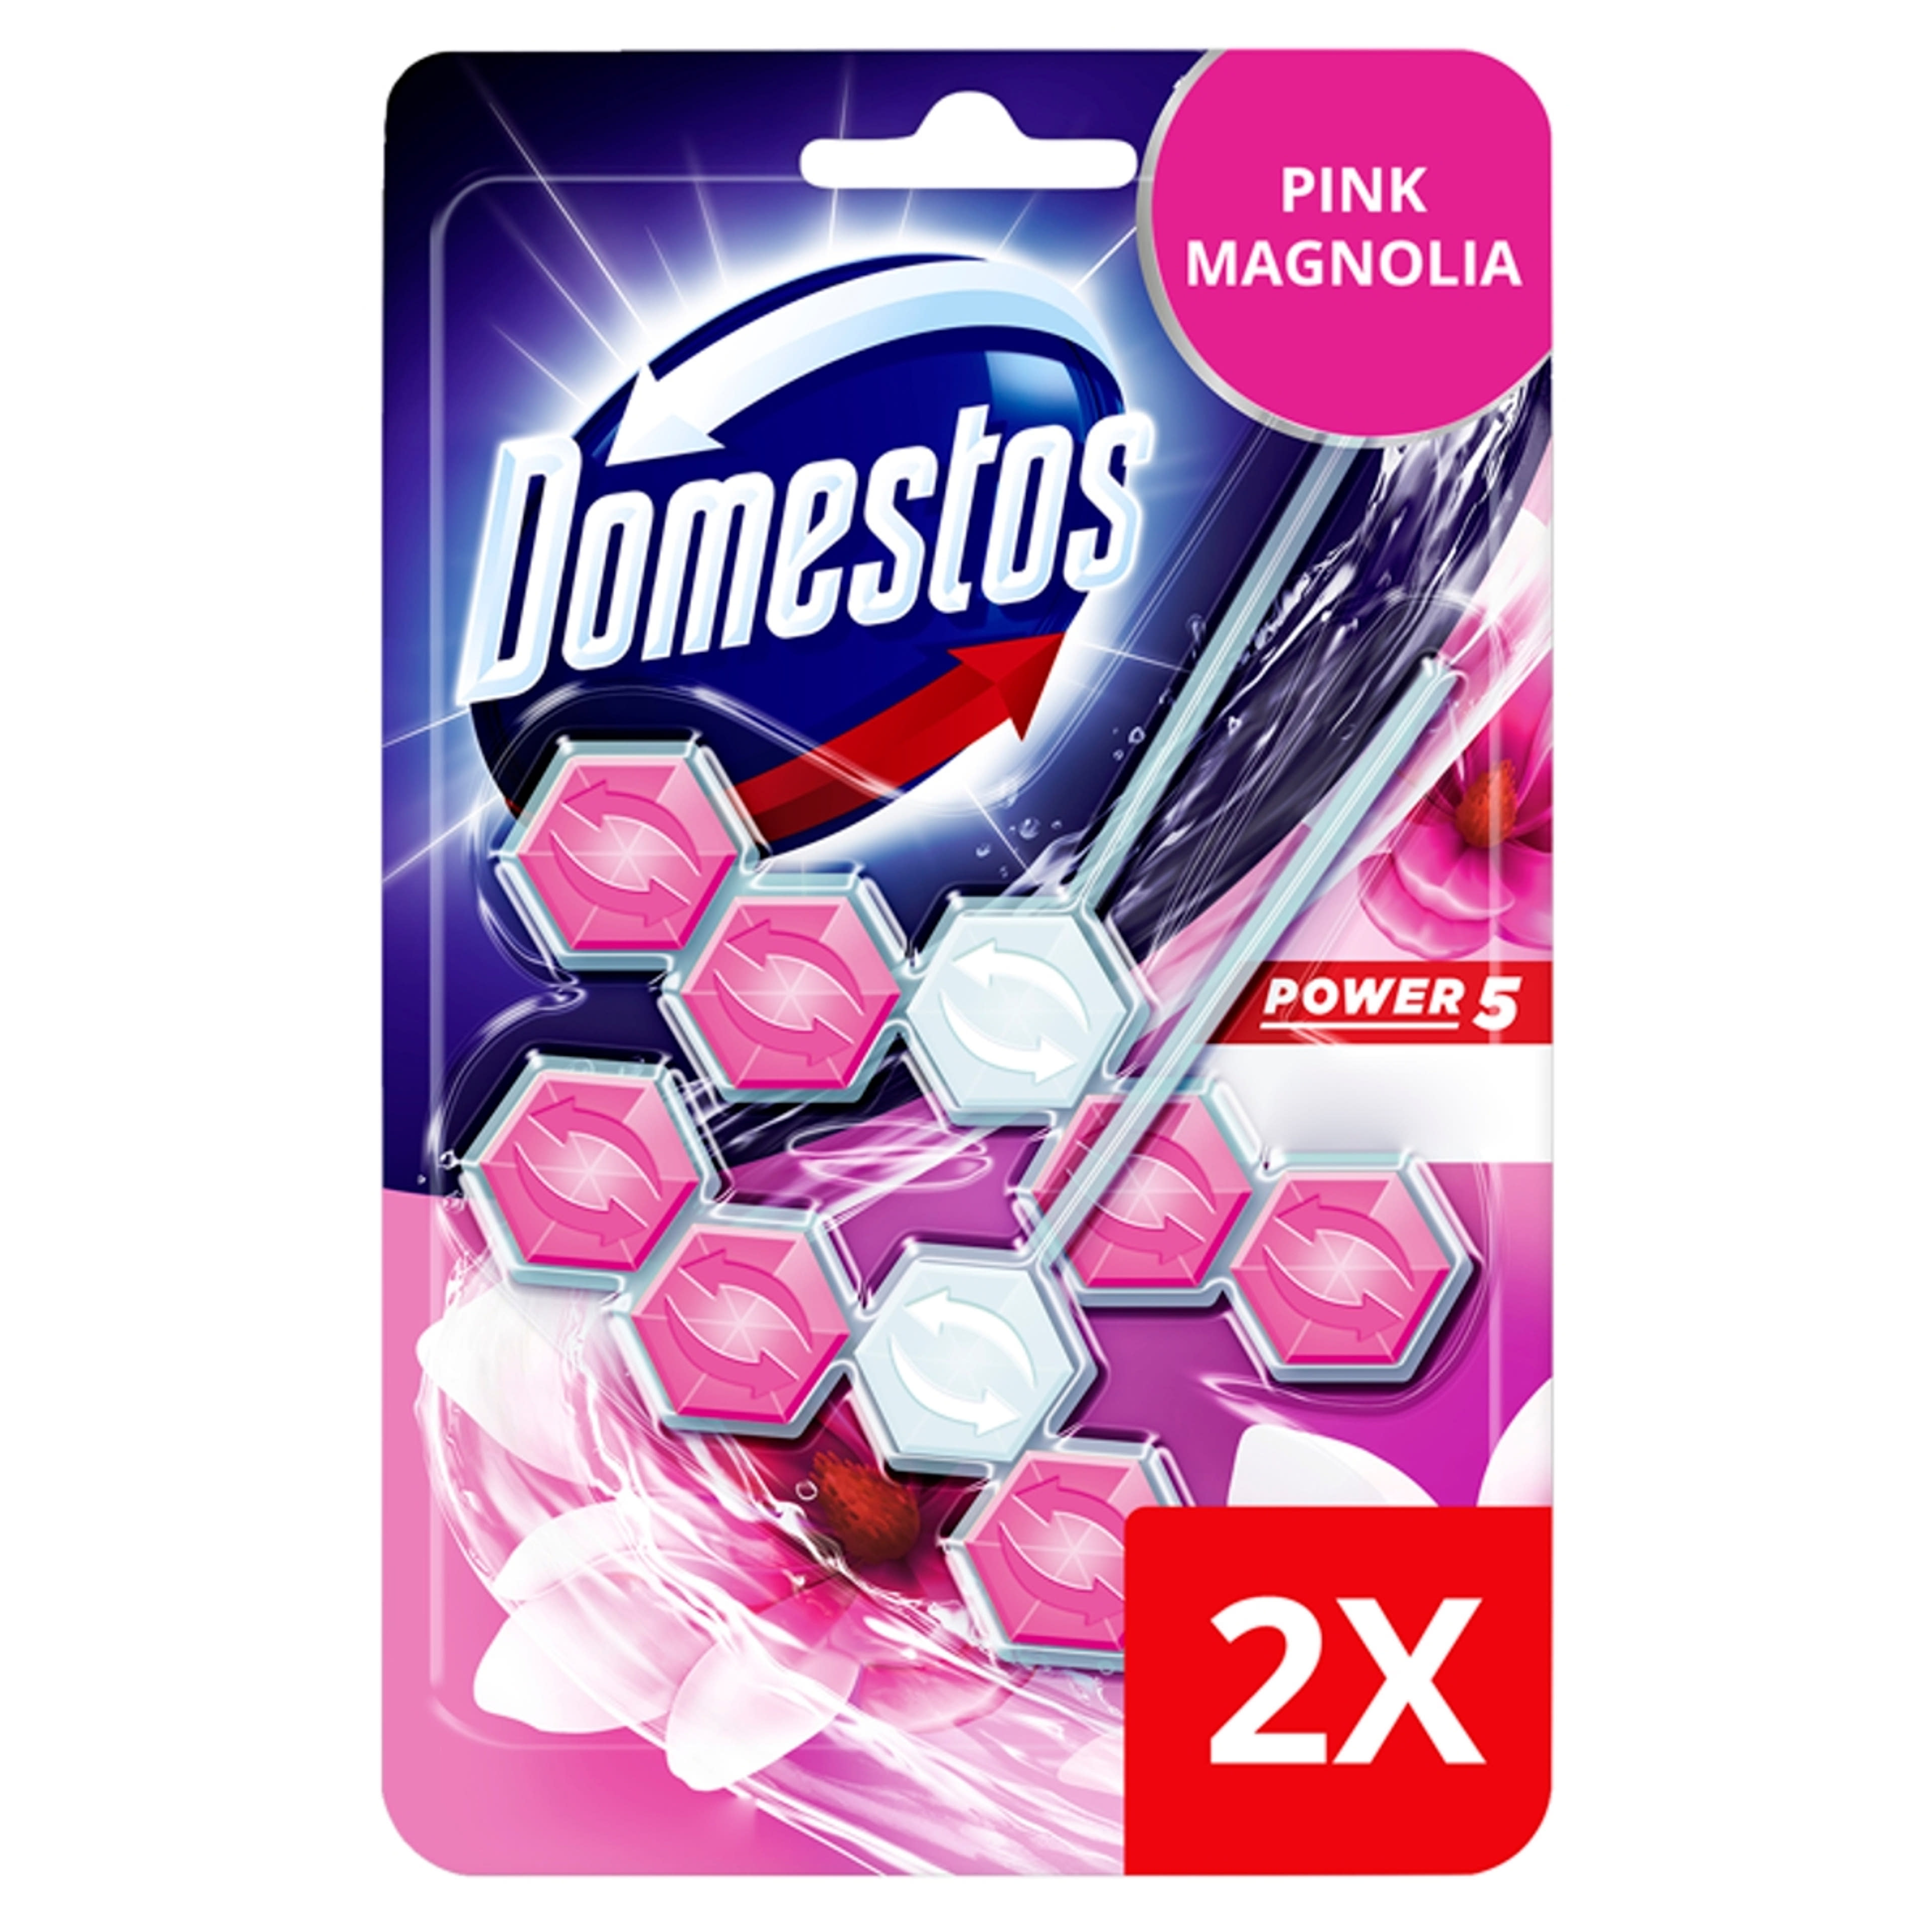 Domestos Power 5 Pink Magnolia WC-Frissítő (2x55 g) - 110 g-2